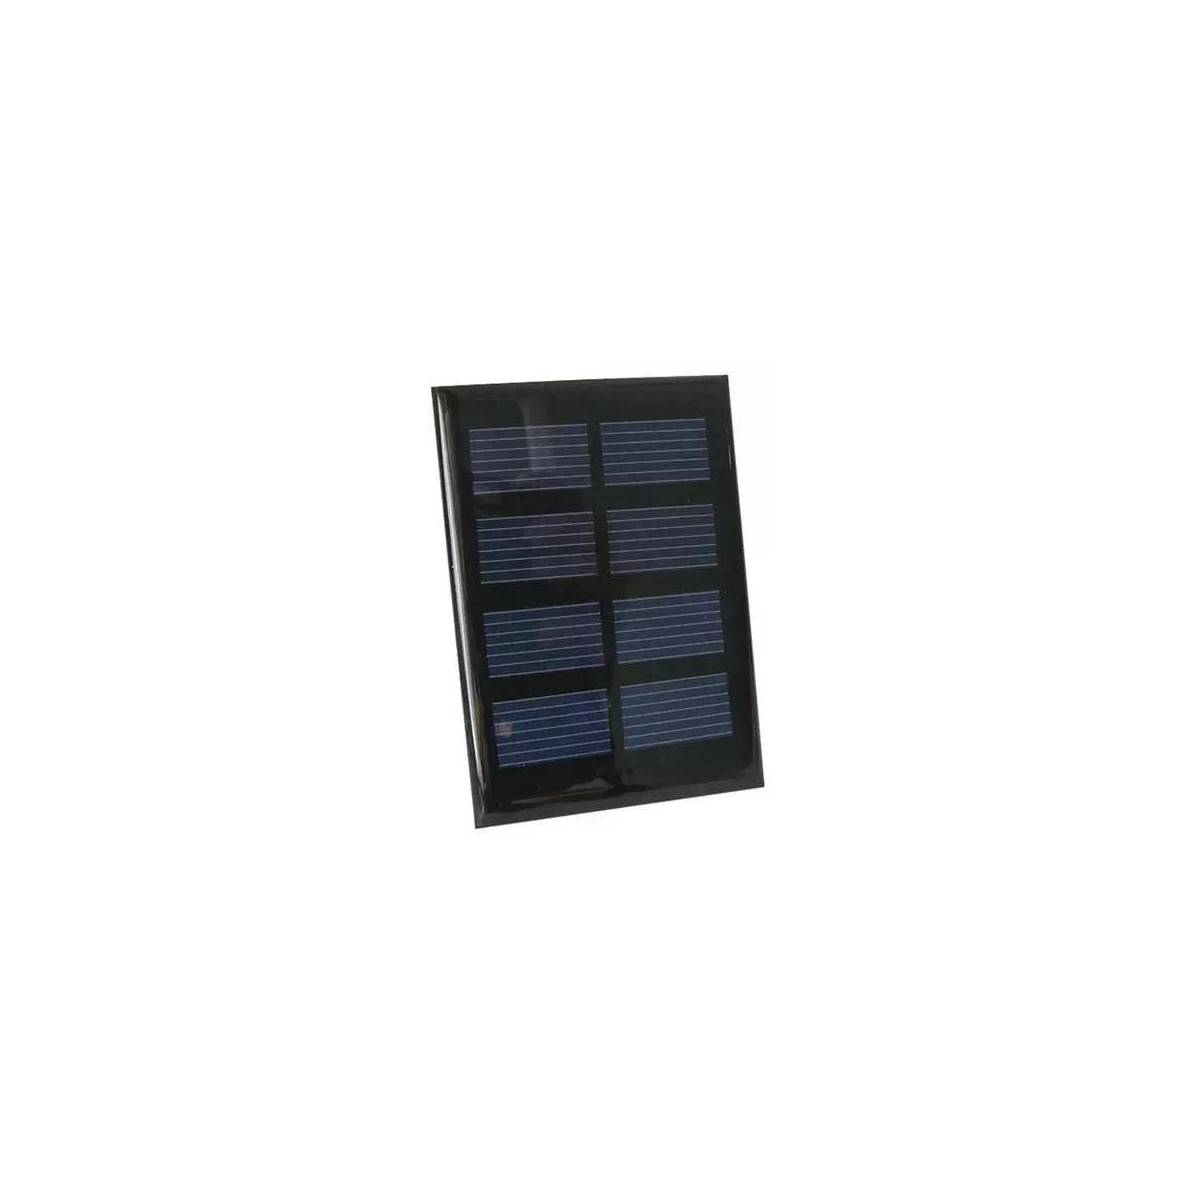 Fotovoltaický solární článek 2V/0,4W (panel)